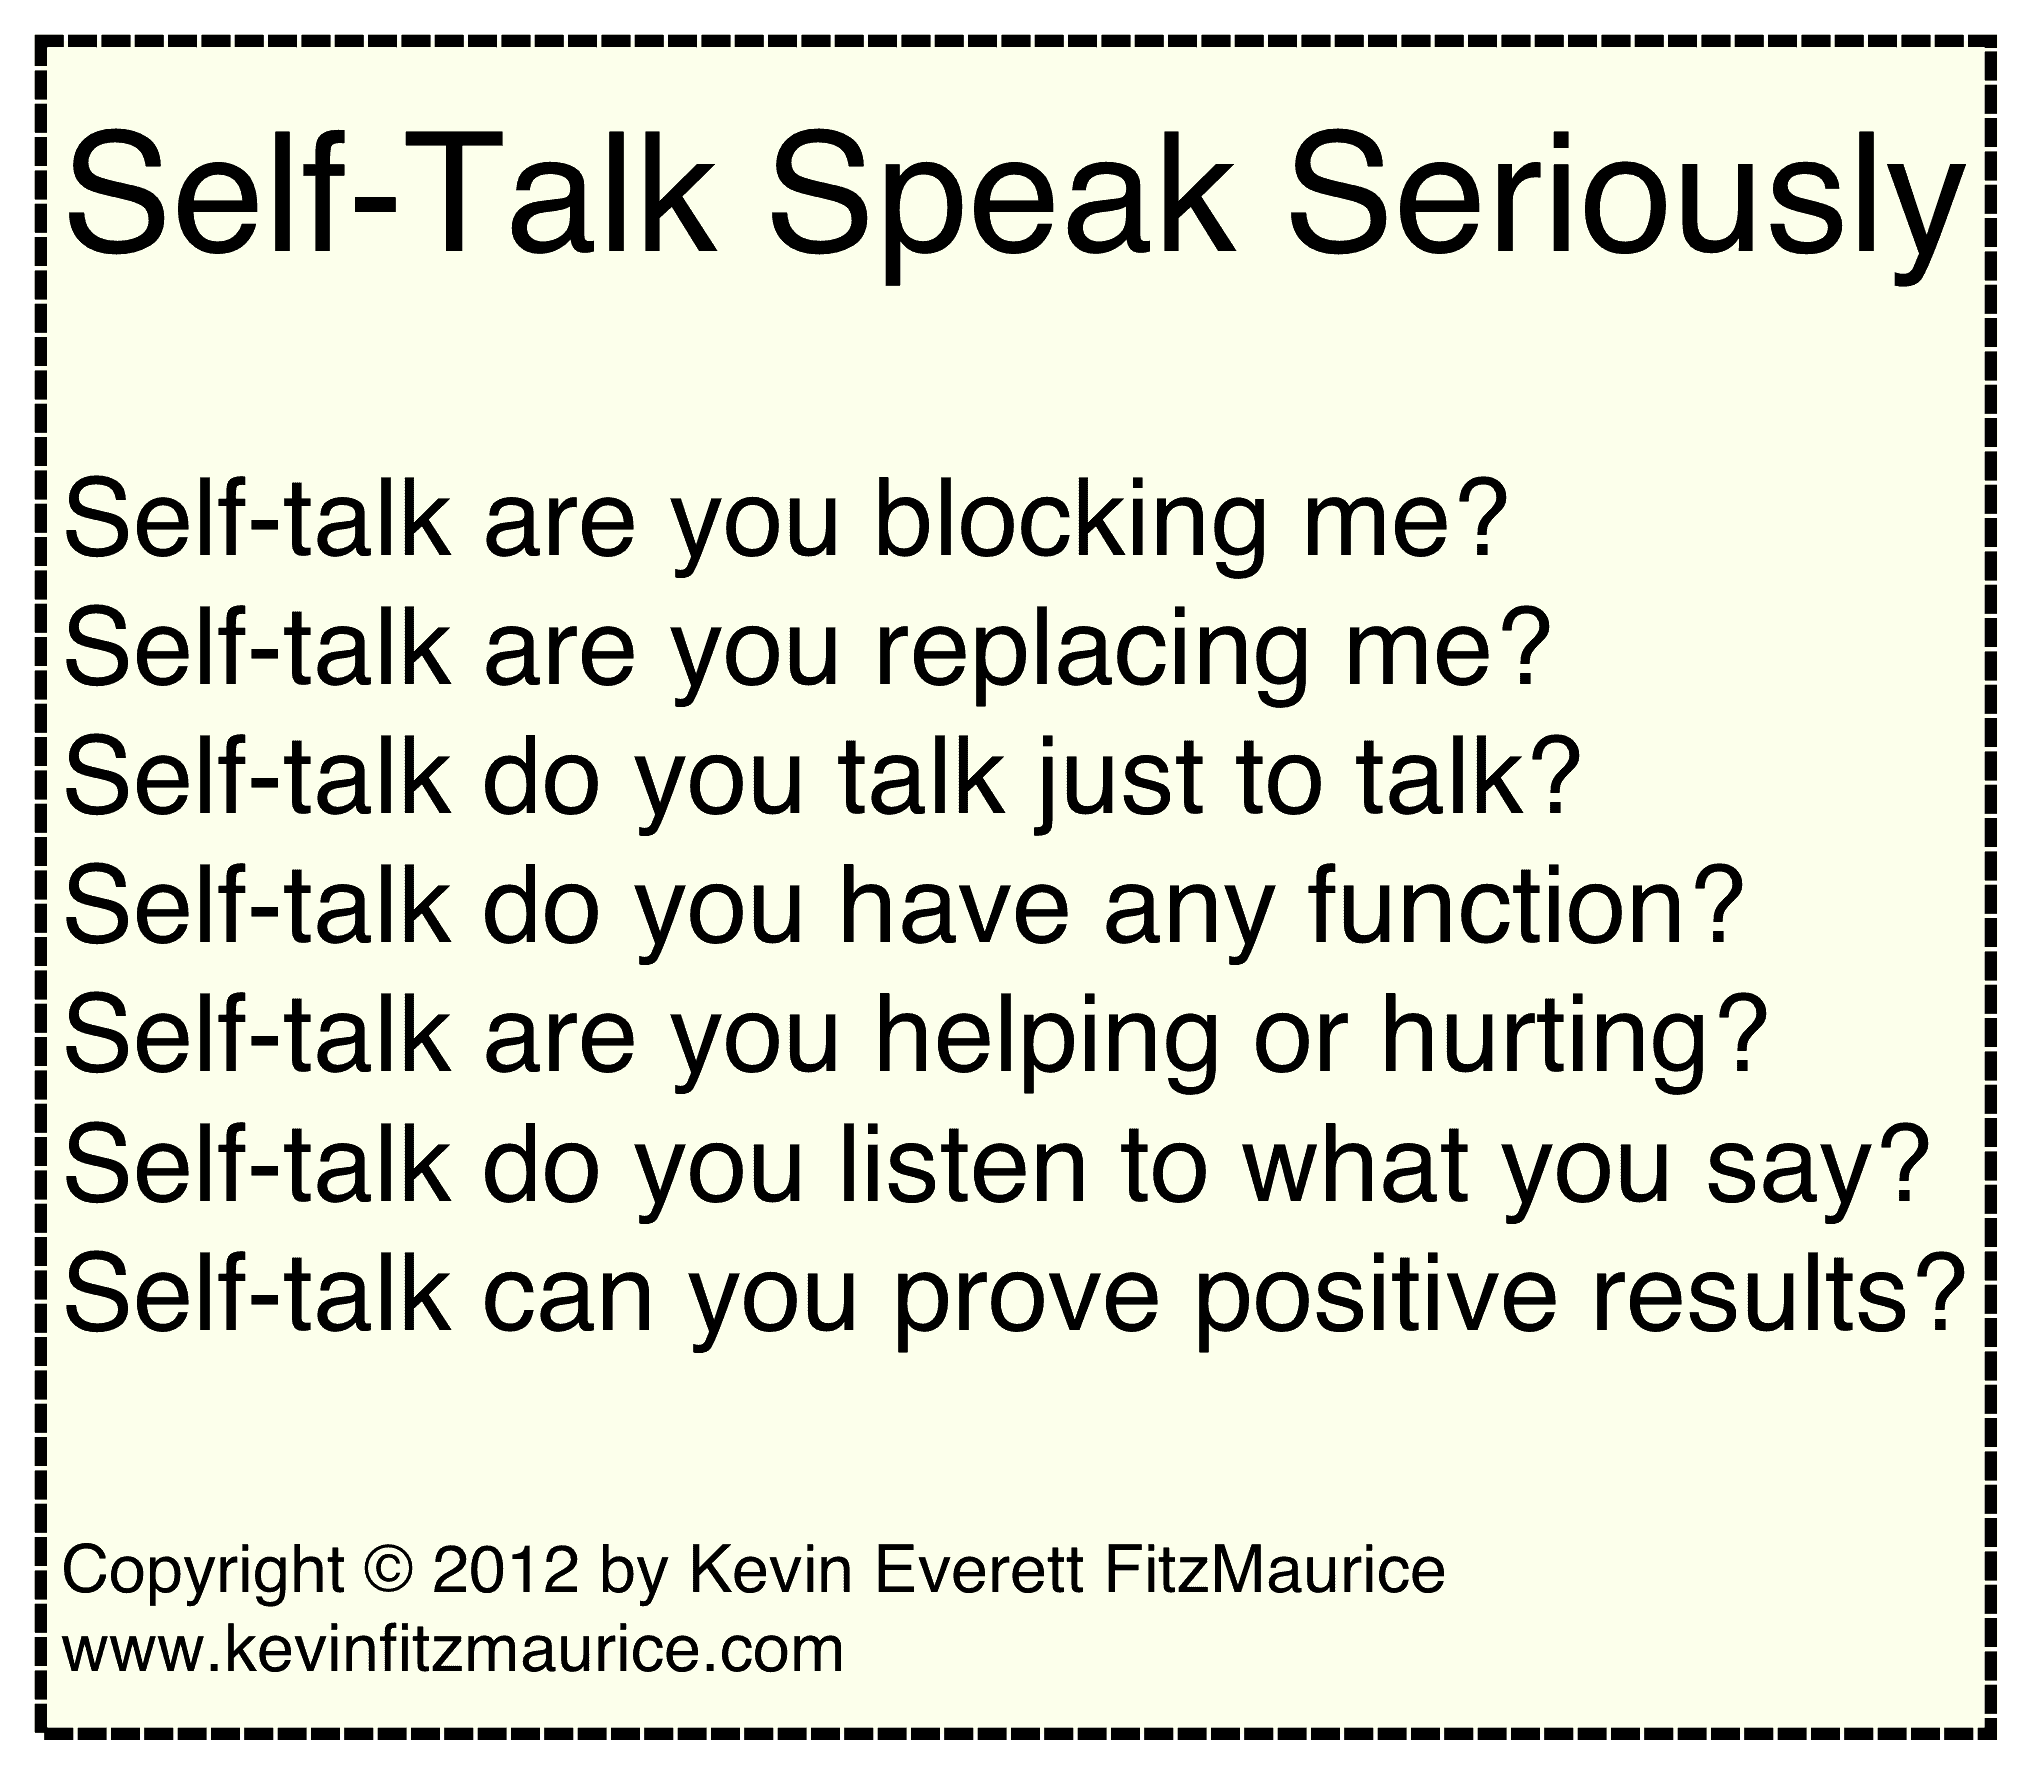 self-talk is madness